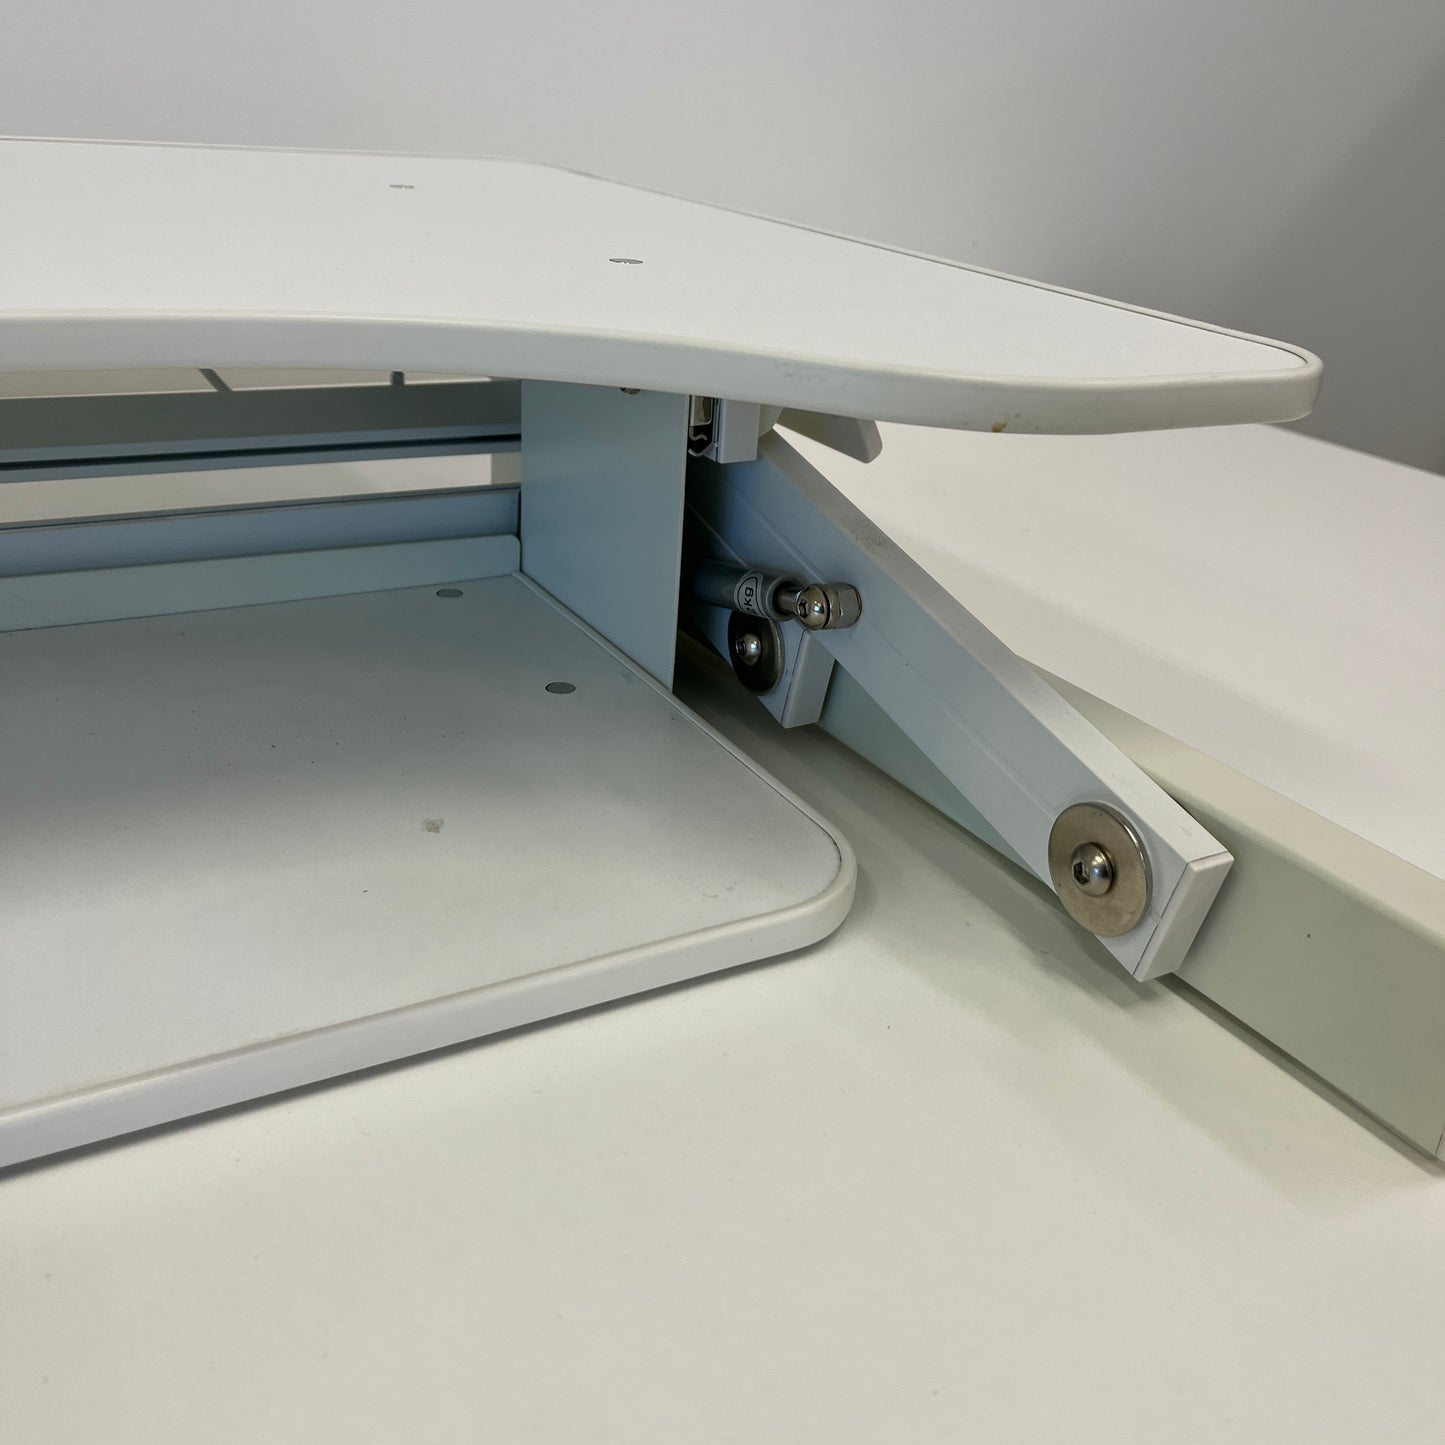 Wynston Desk 'Arise Deskalator' Riser Table Top